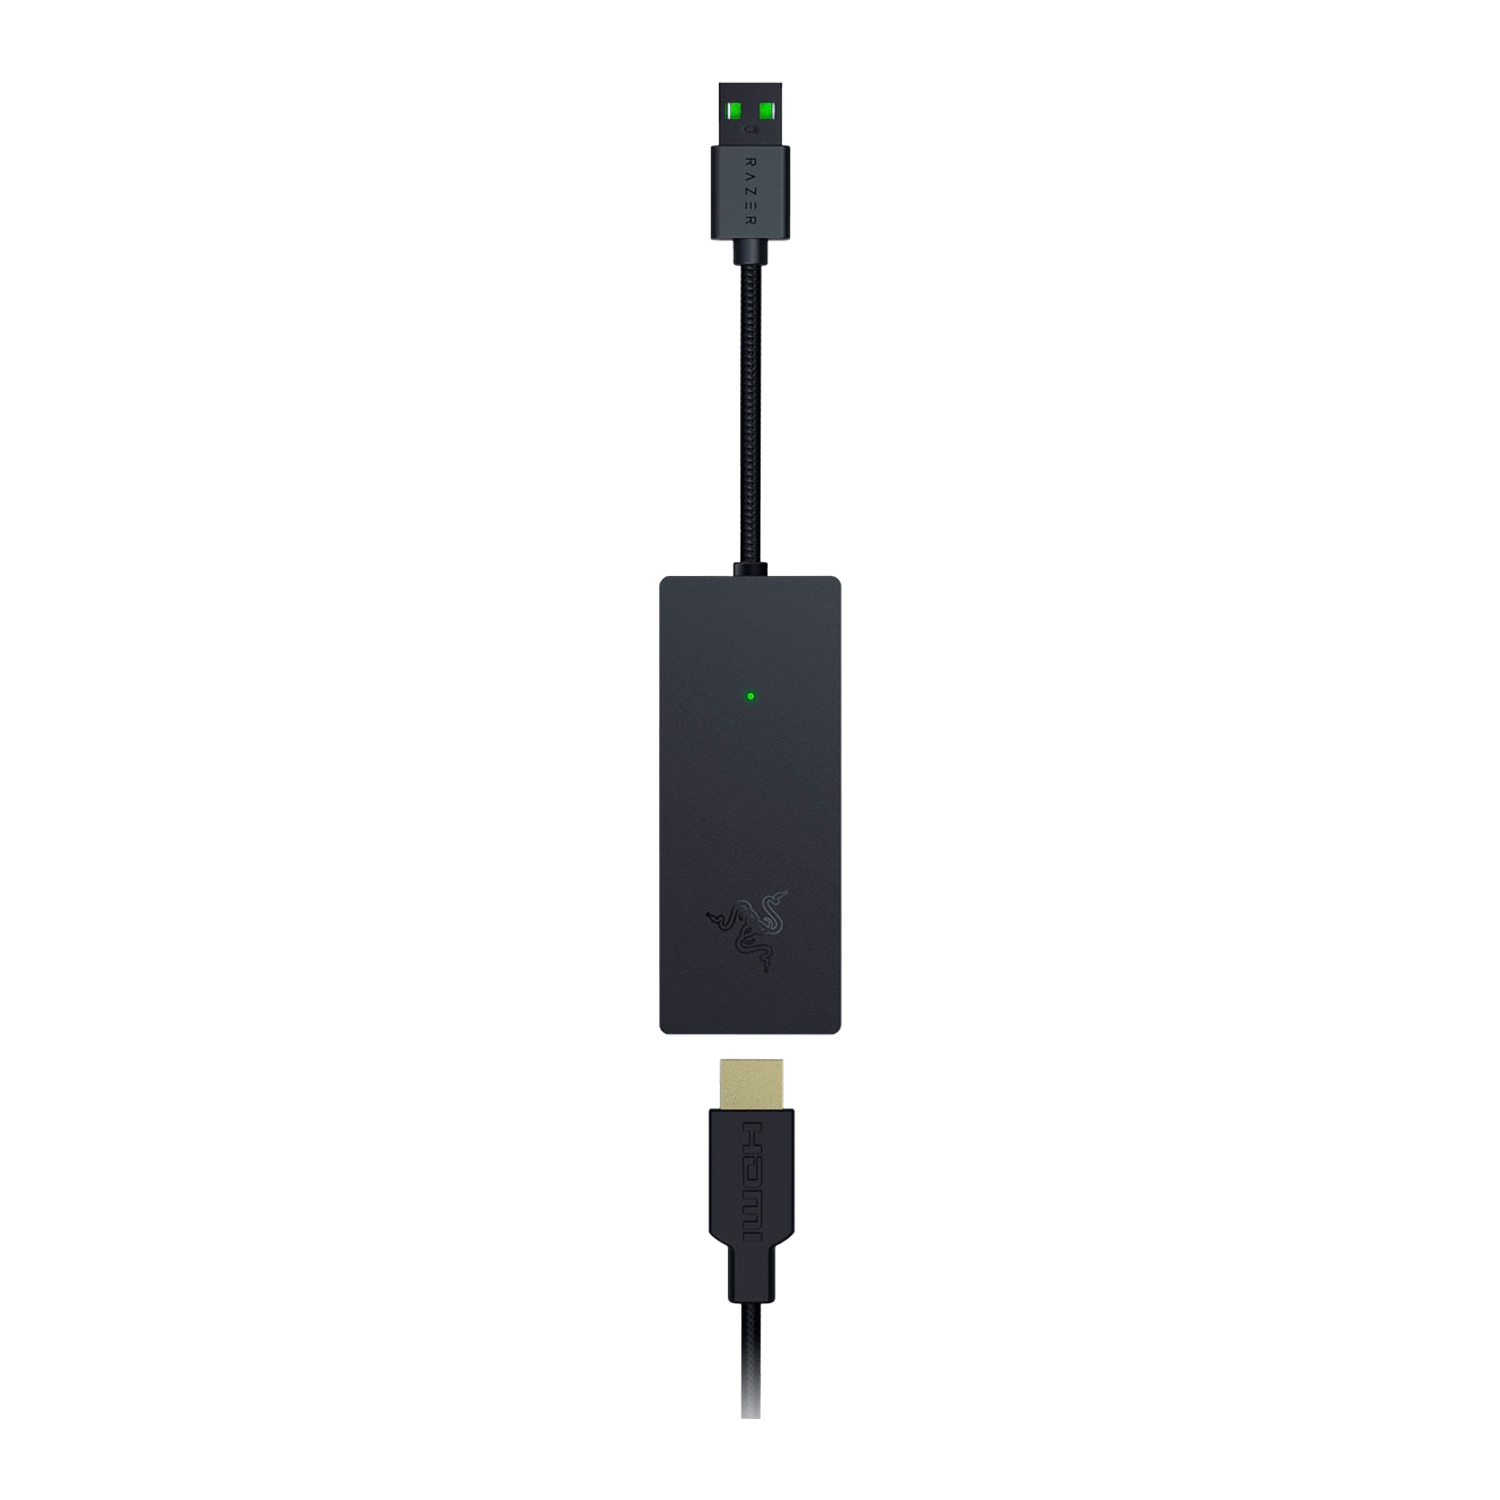 Placa de Captura Razer Ripsaw X 4K / USB - RZ20-04140100-R3M1